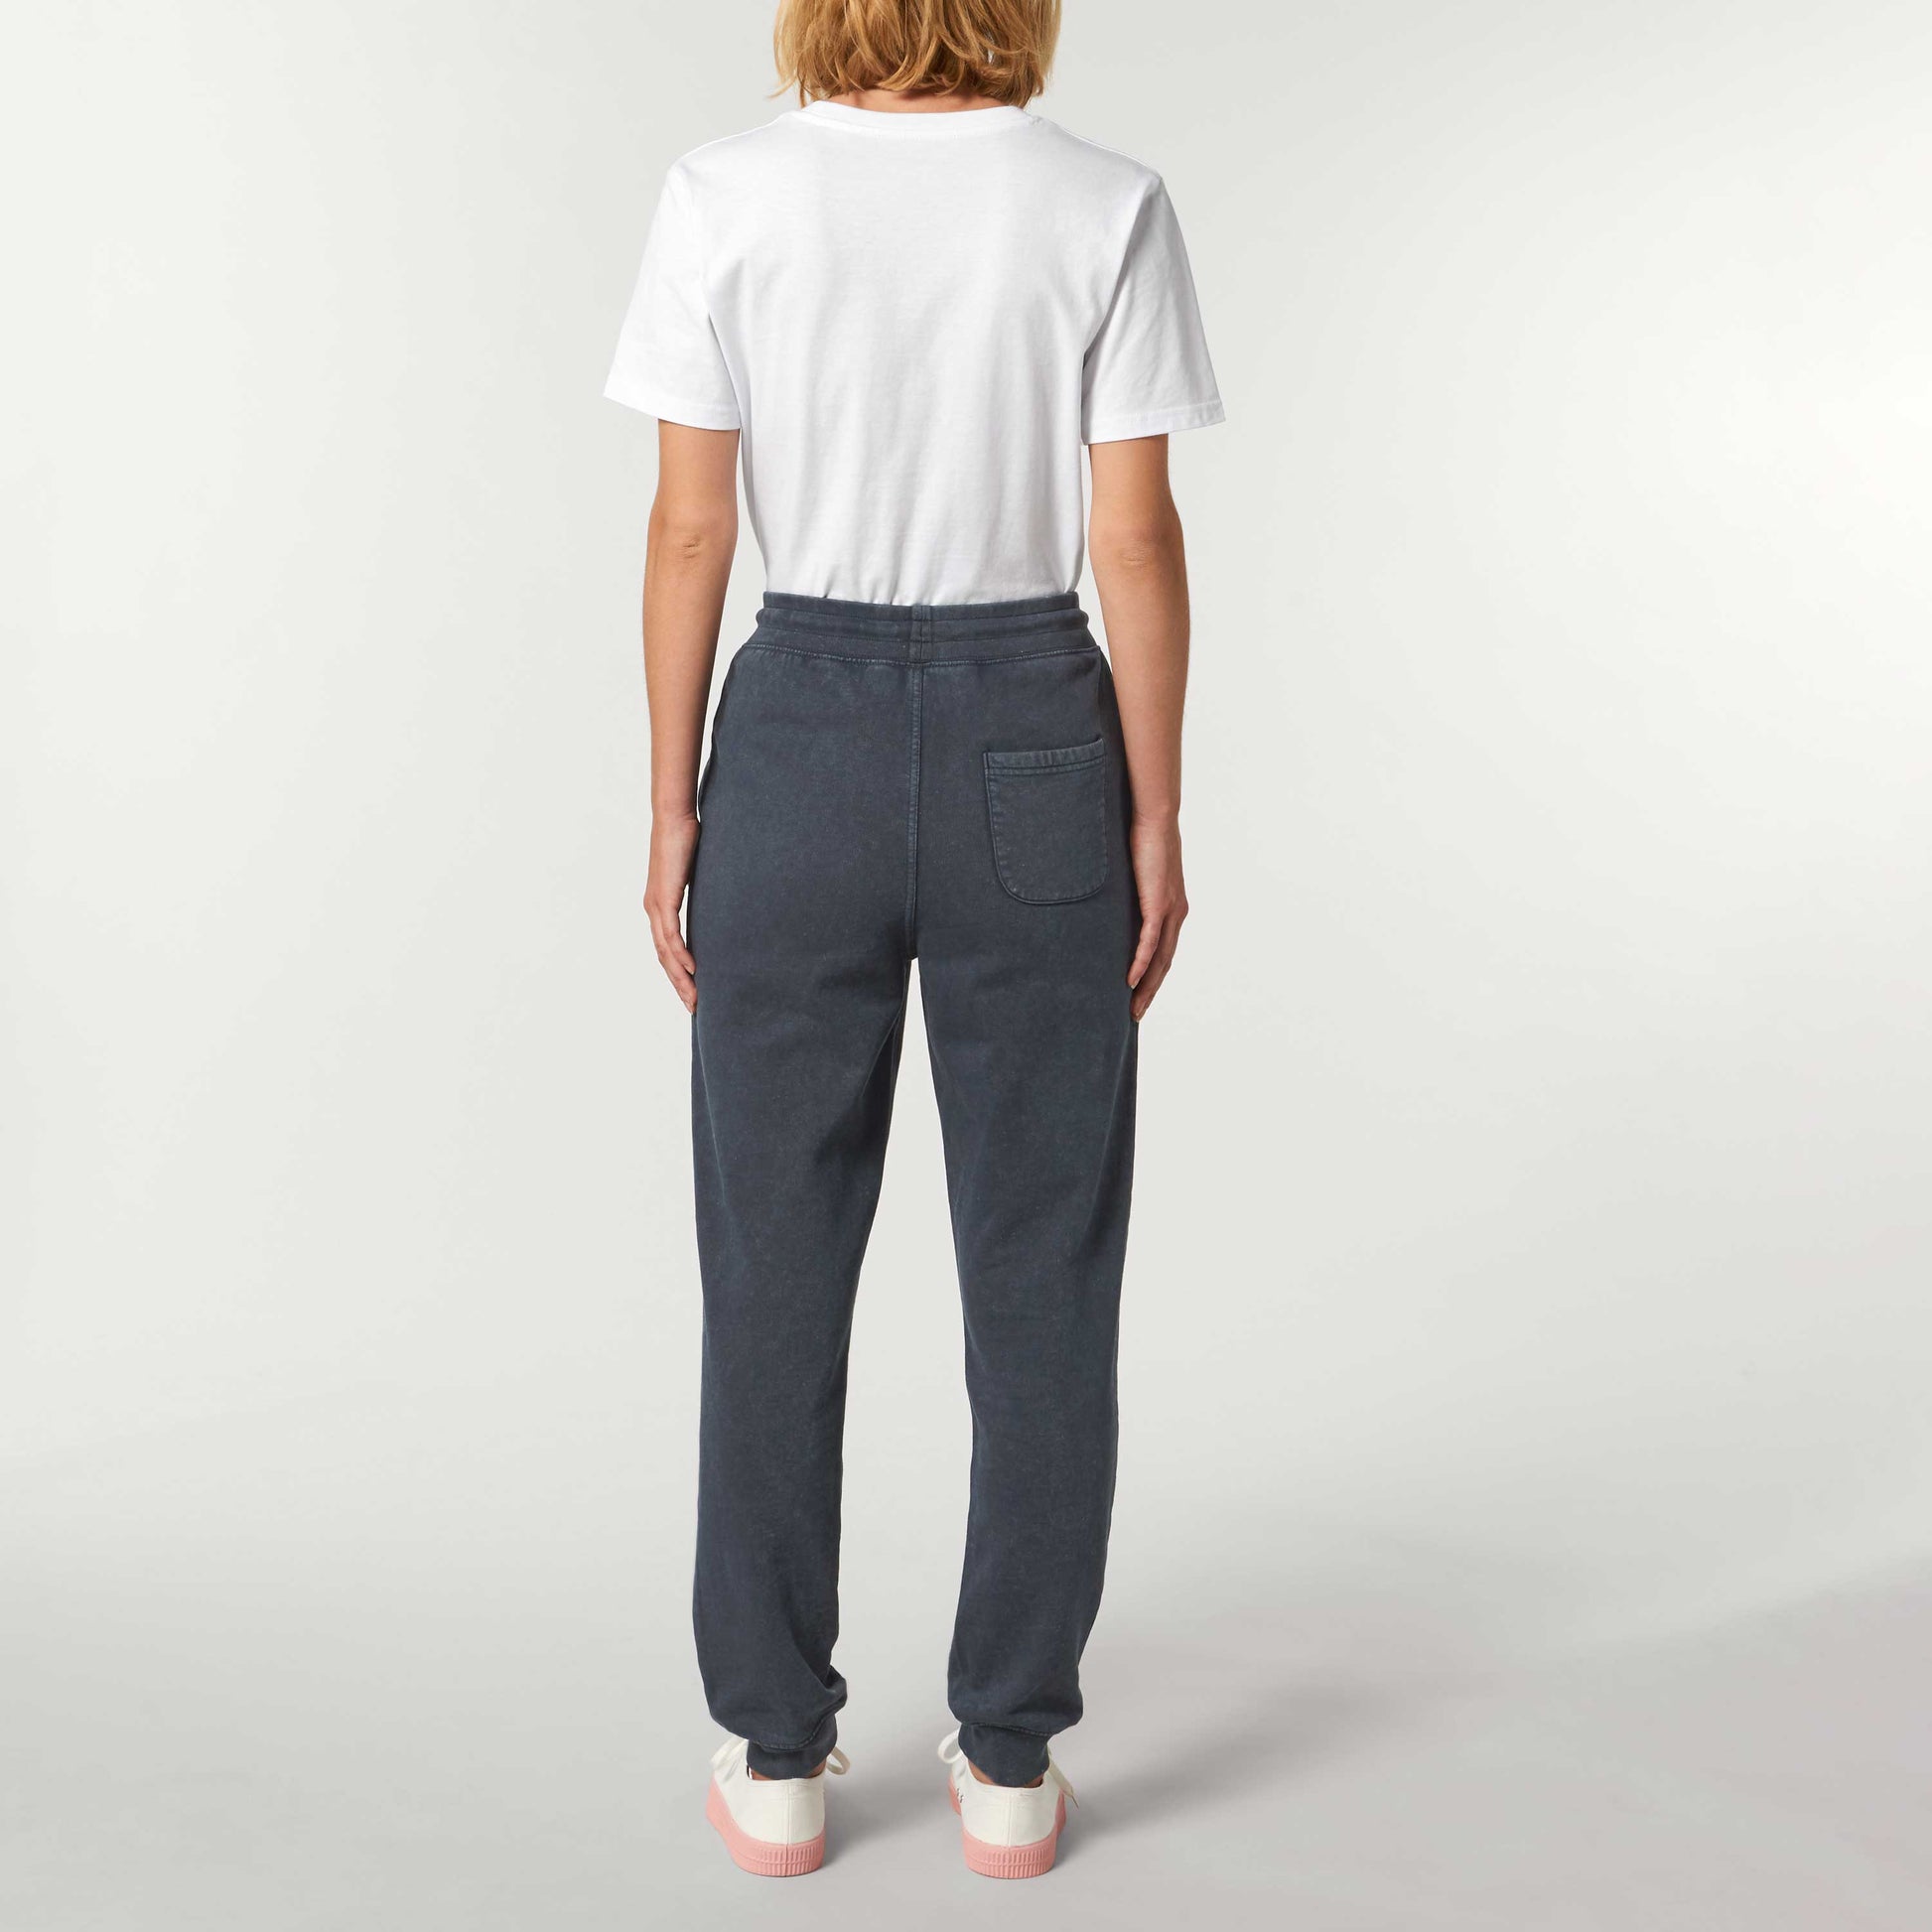 Defeua® MOVE ON retro pantaloni tuta cotone biologico tinto in capo-modello grigio vintage